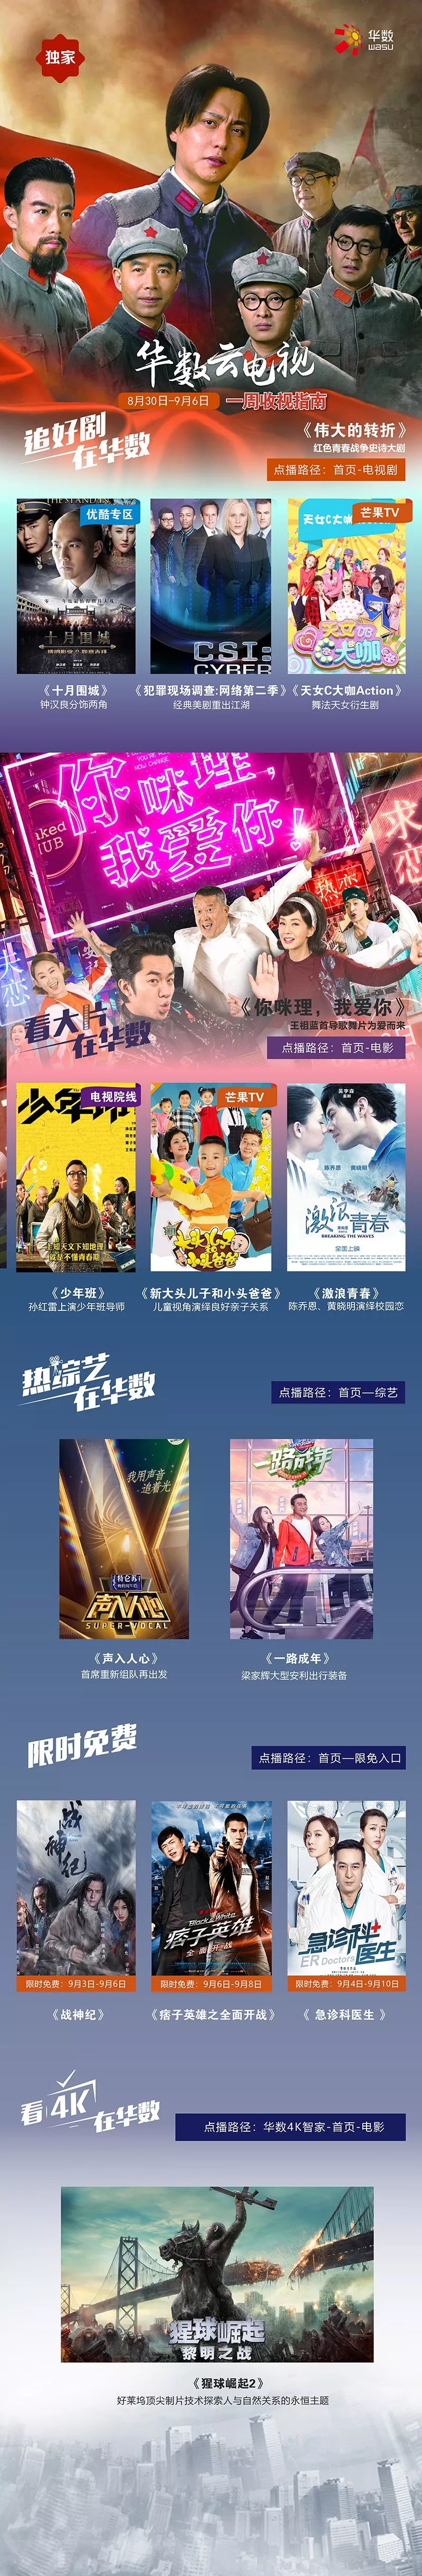 推荐 华数云电视8月30日 9月6日收视指南 影视剧